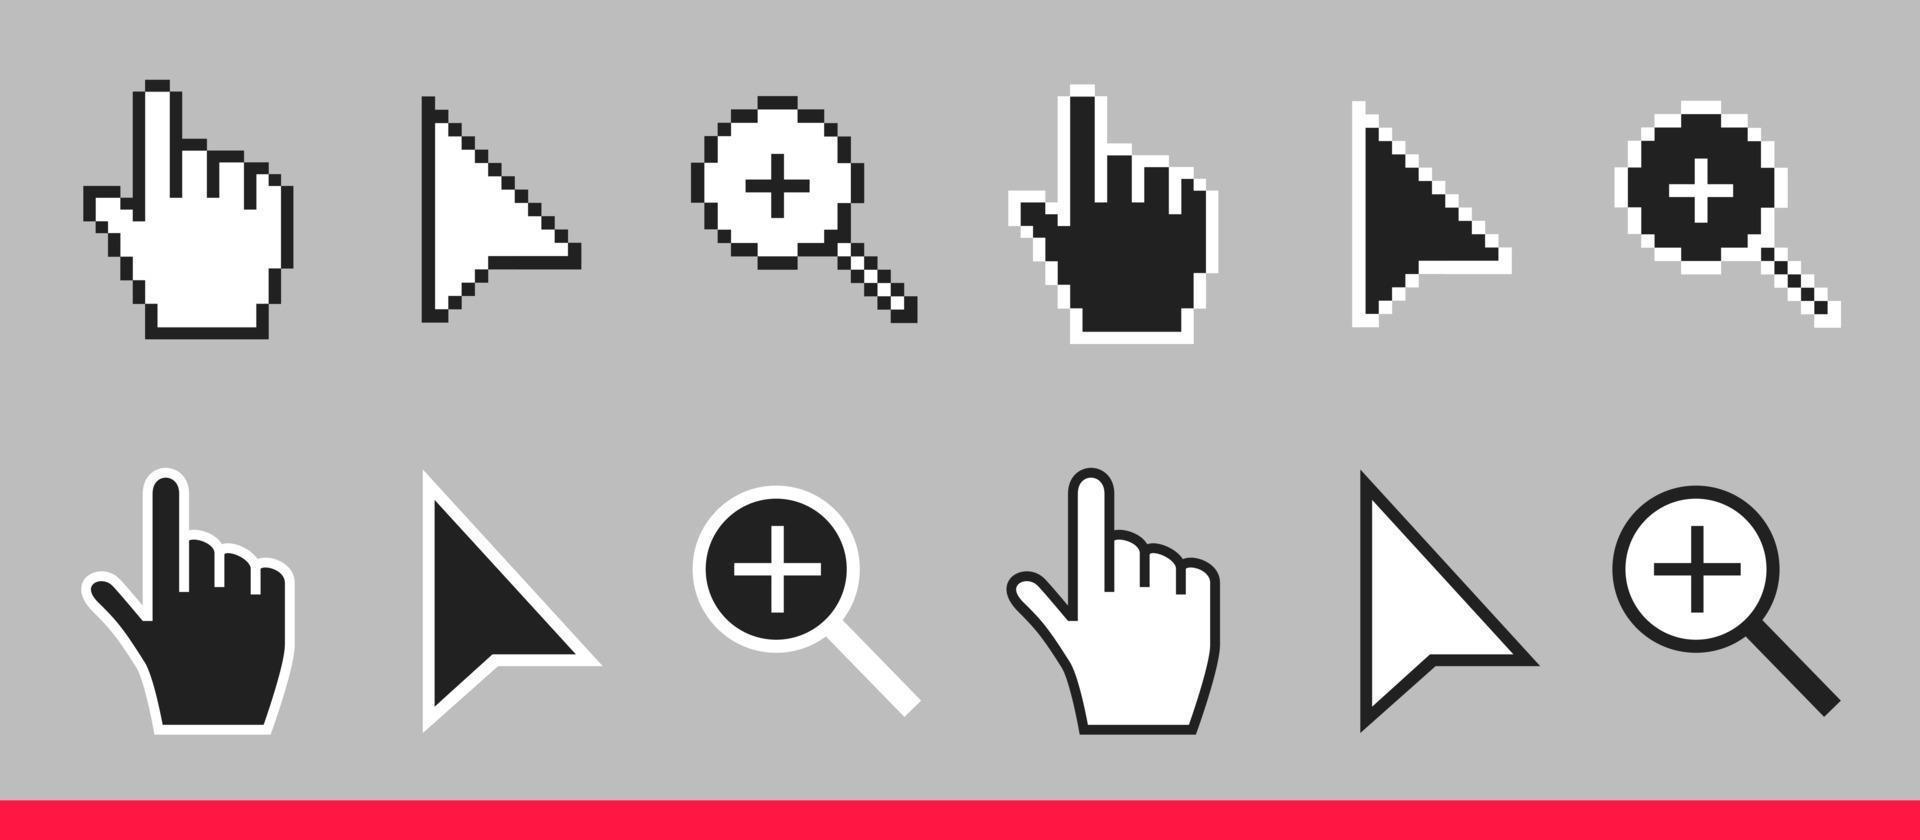 flèche noire et blanche, main et loupe icônes de curseur de souris non pixel ensemble d'illustrations vectorielles vecteur